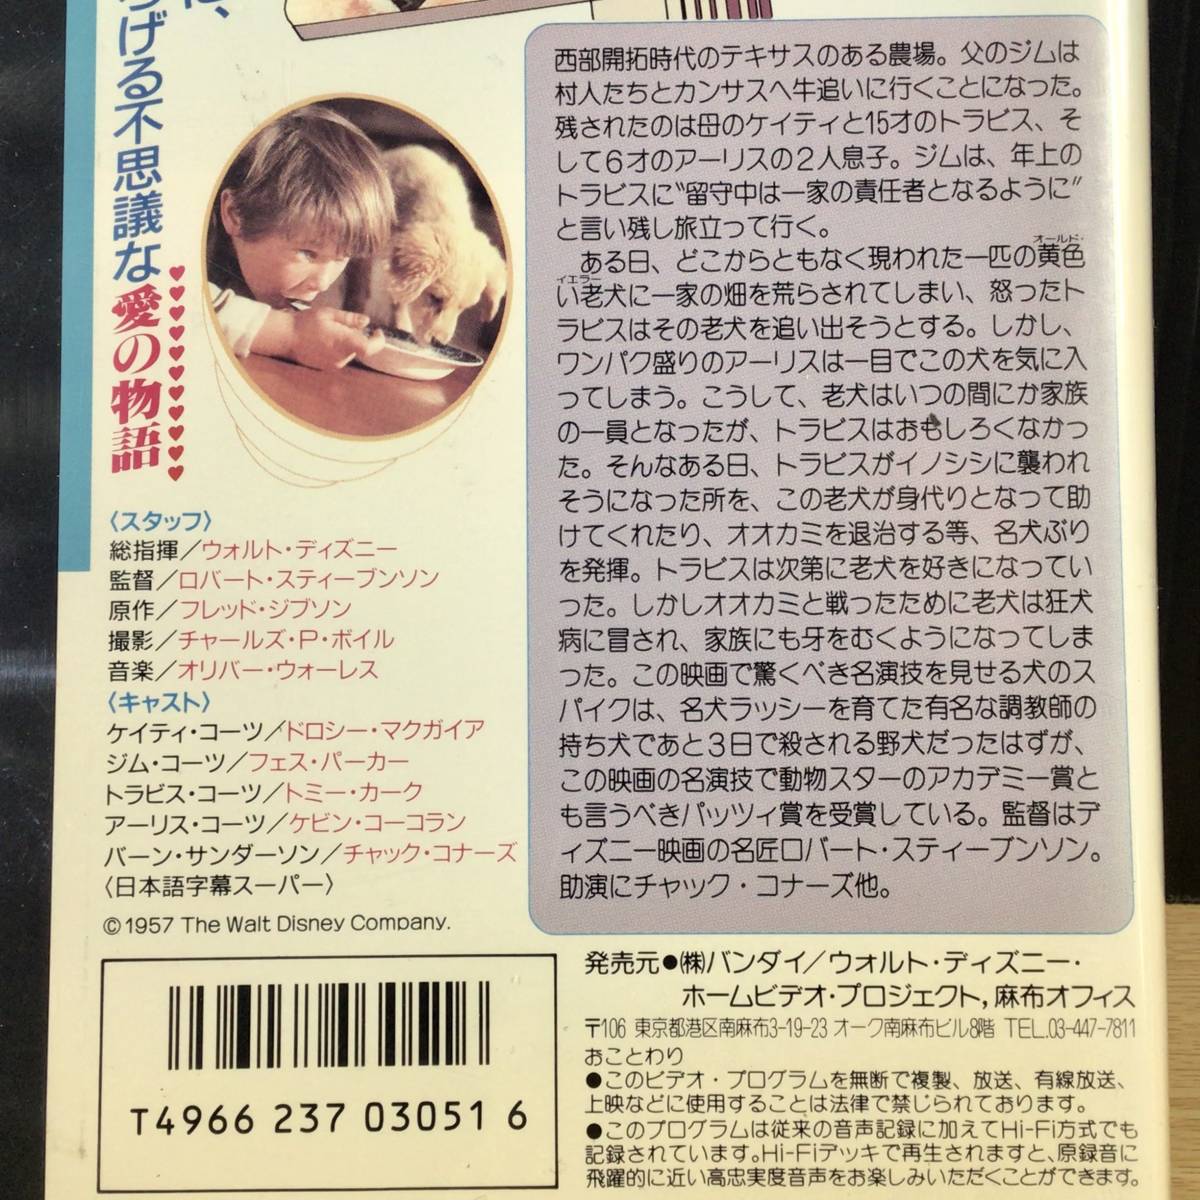 [ прокат *VHS видео soft ] желтый . собака, общий палец .|uoruto* Disney, не DVD., историческое имя название произведение, японский язык субтитры,1957 год America фильм 